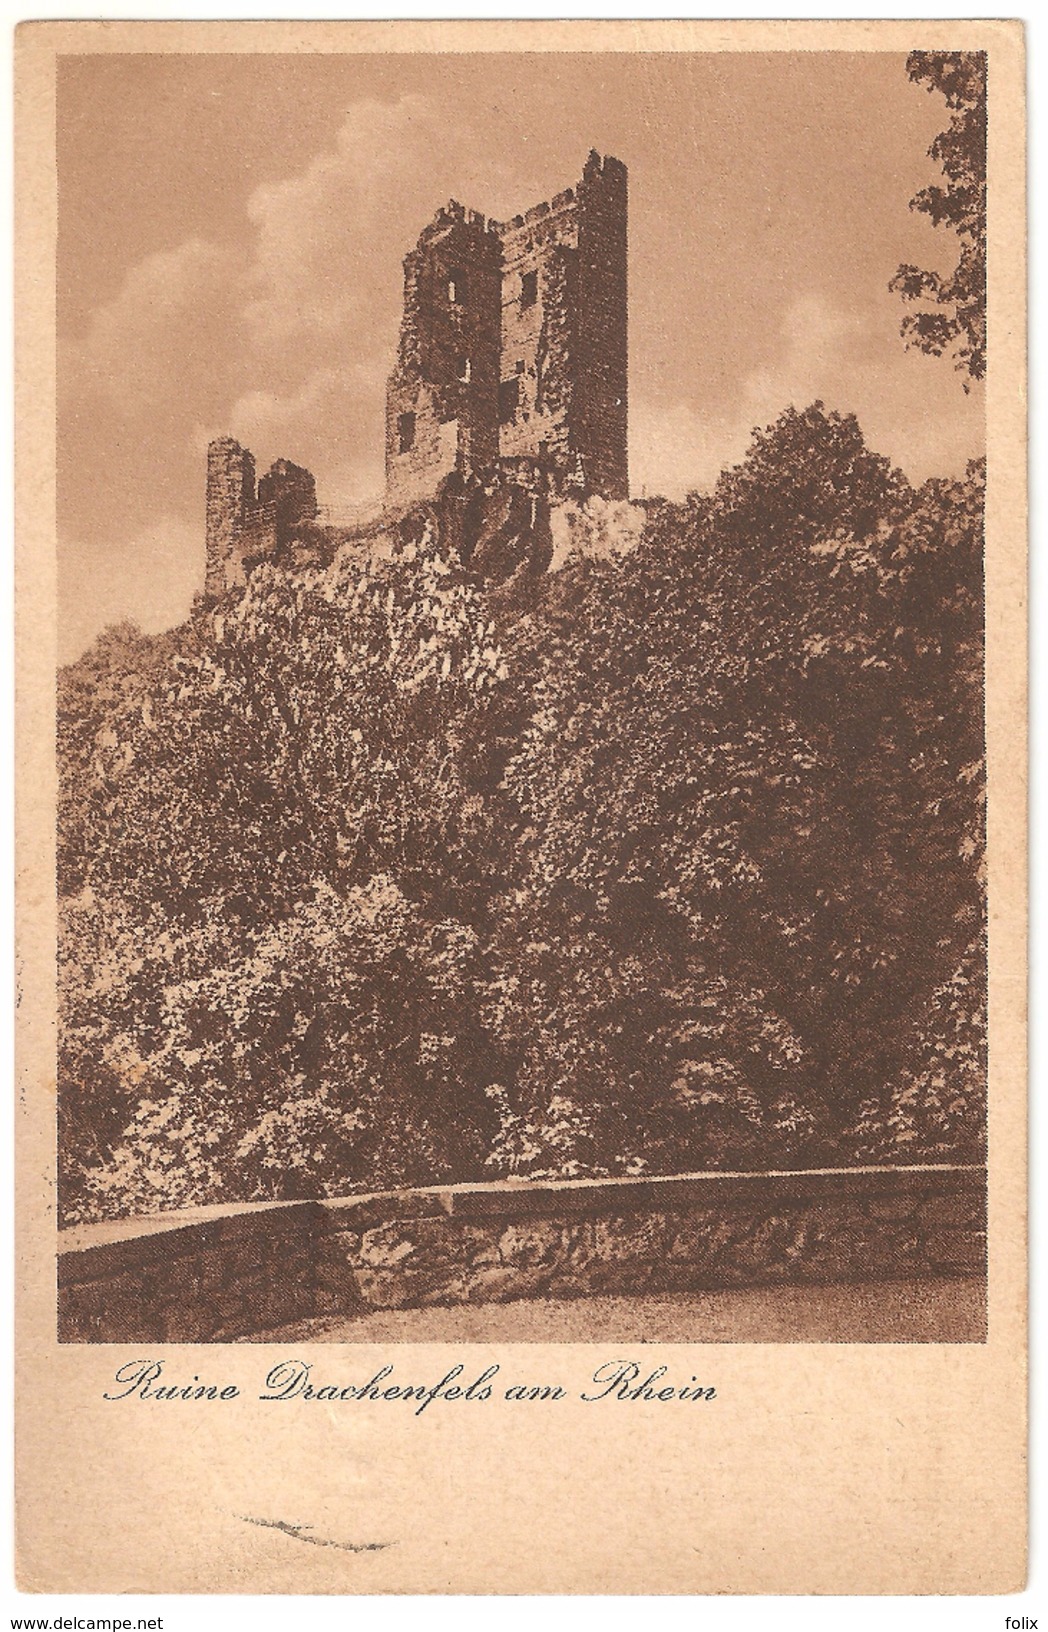 Ruine Drachenfels Am Rhein - 1939 - Photo-Archiv V. Siebengebirge, E. Lichtenberg, Lichtbildner, Honnef - Drachenfels